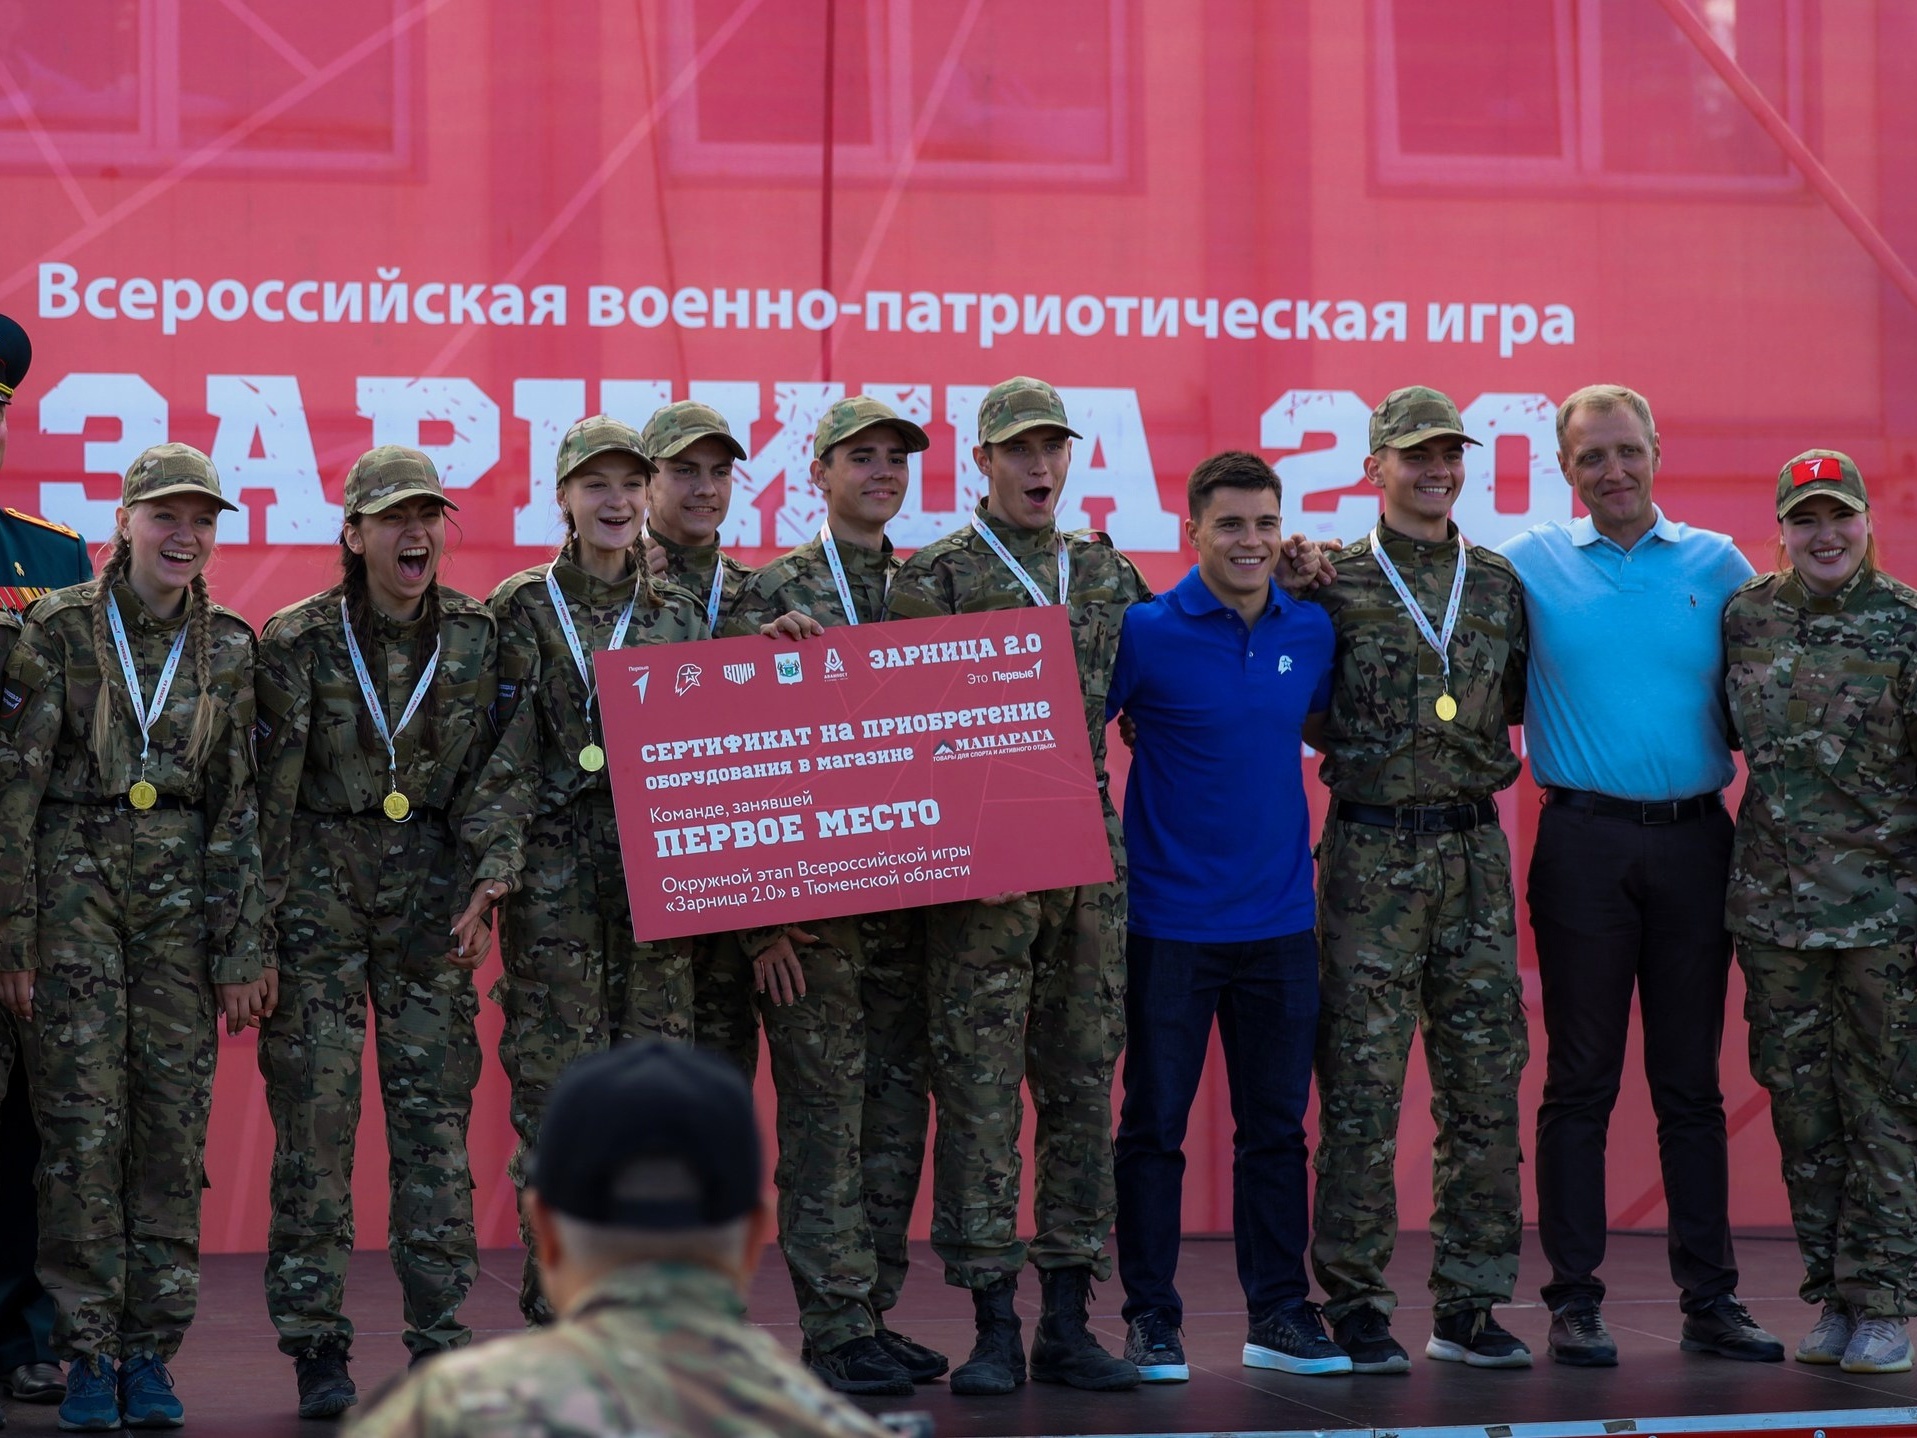 Первые из Челябинской области вошли в число победителей и призёров Всероссийской военно-патриотической игры «Зарница 2.0»